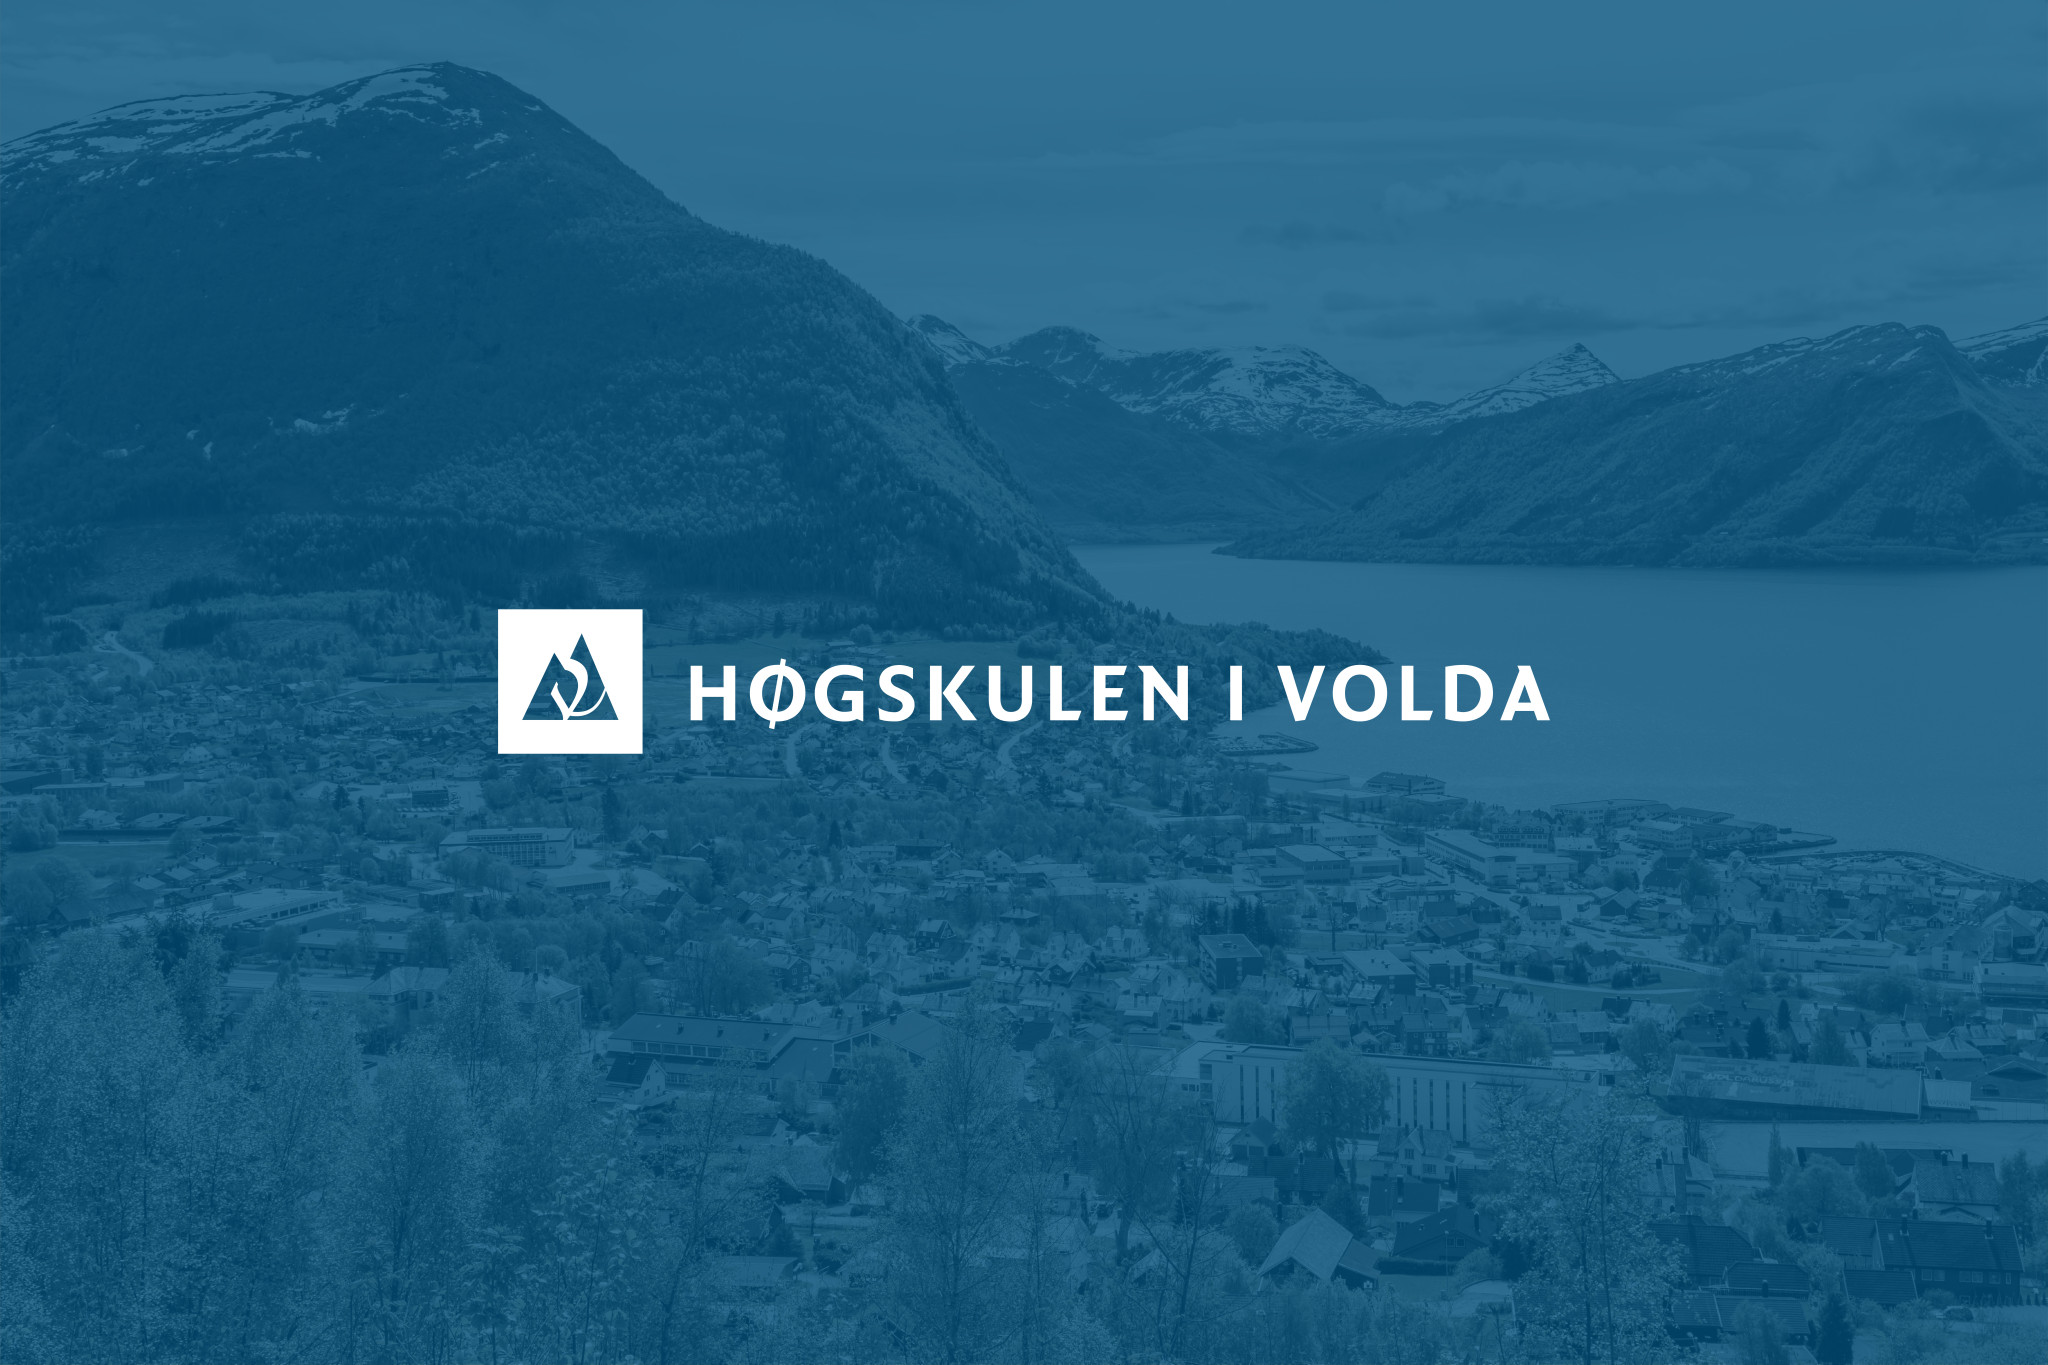 Logo til høgskulen i Volda er plassert over et bilde av bygda med blått filter lagt over